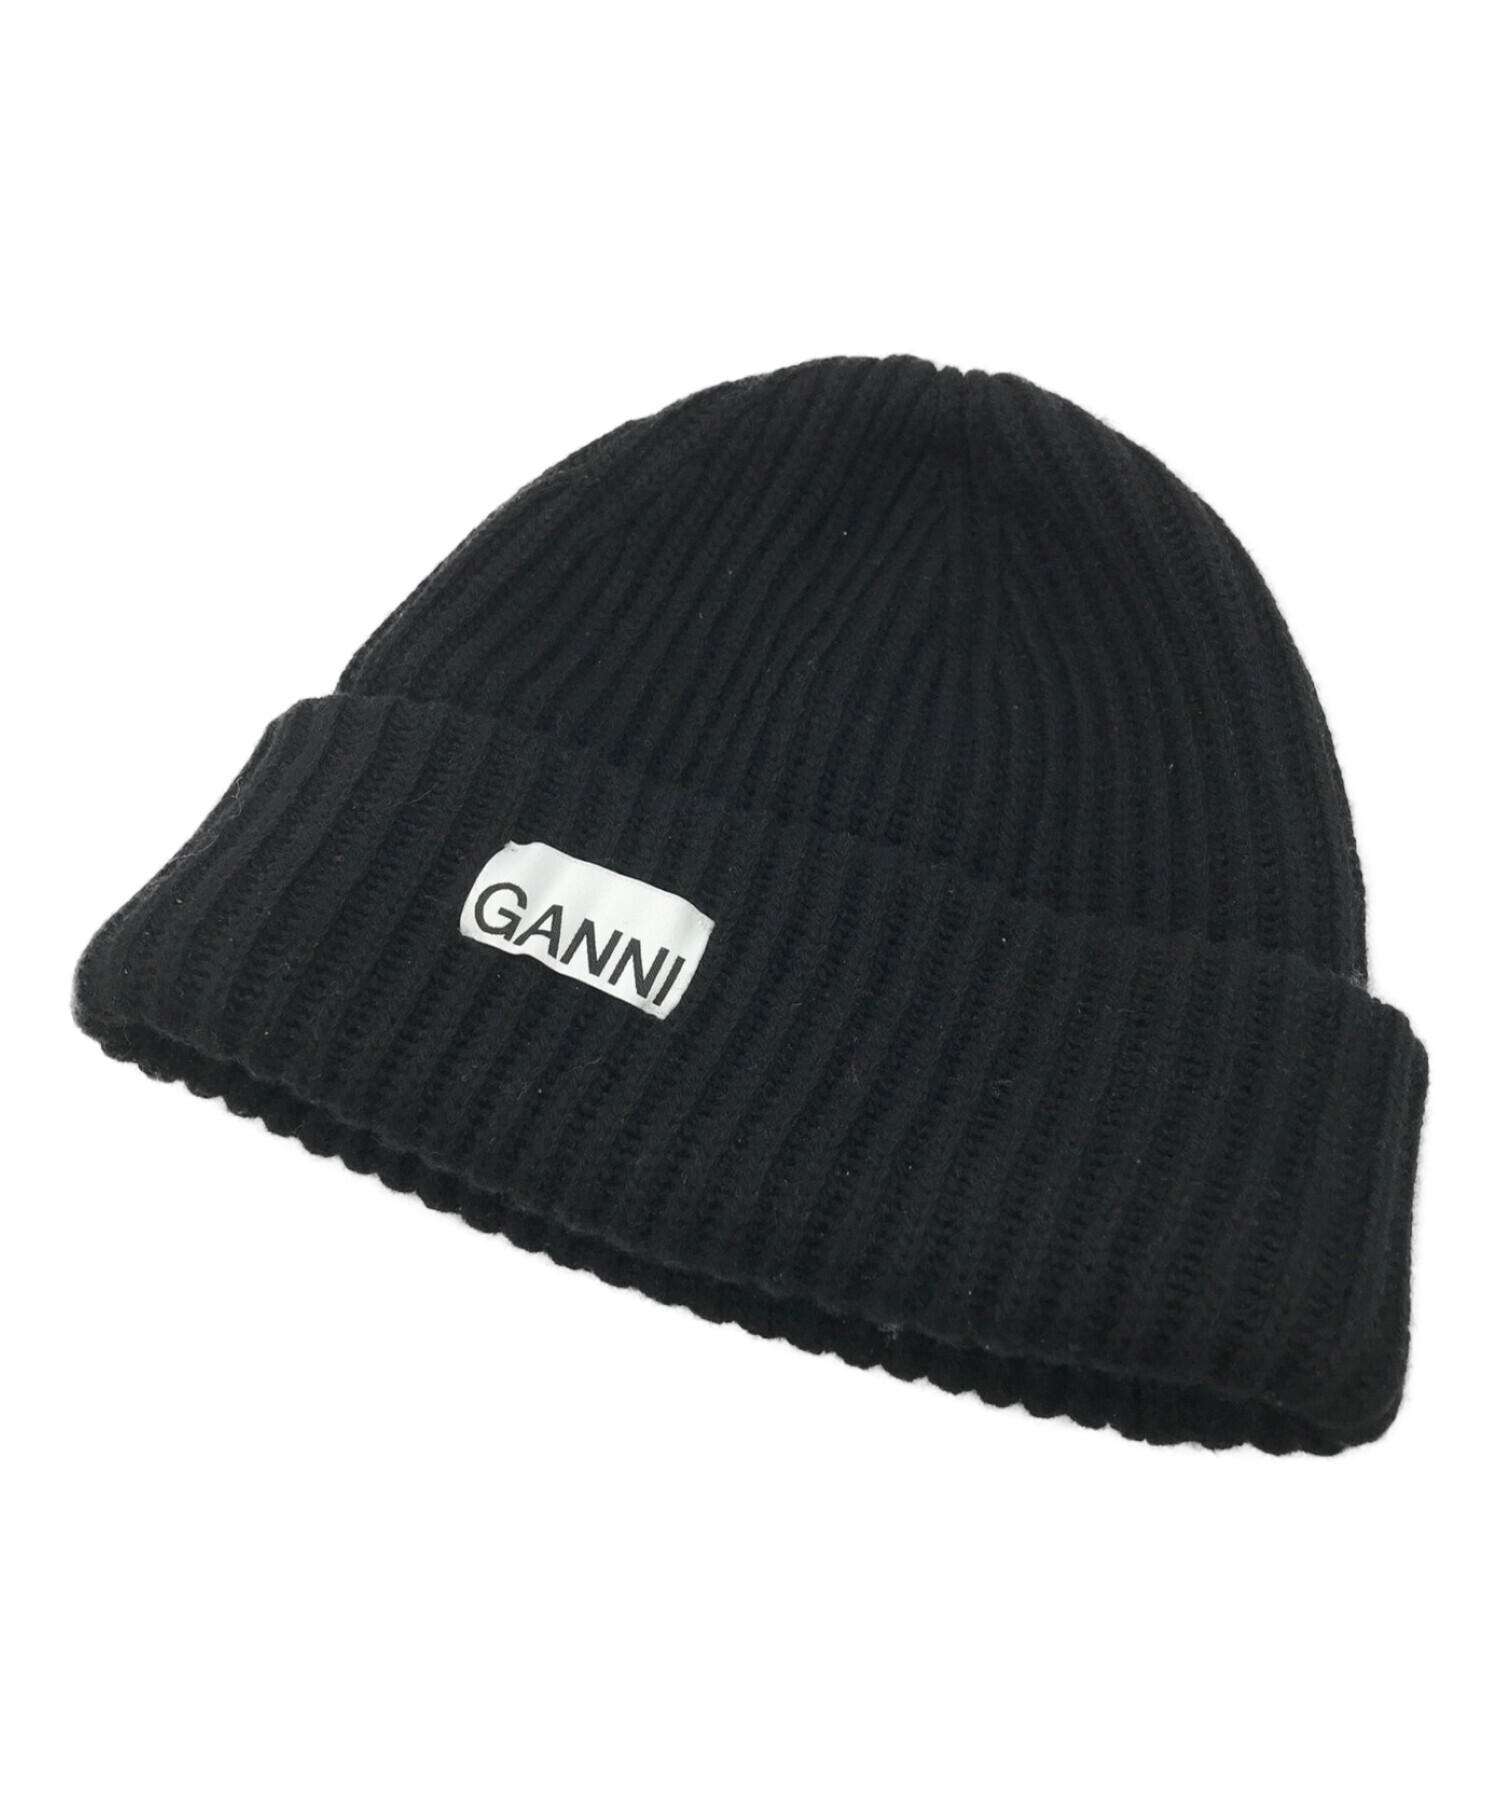 中古・古着通販】Ganni (ガニー) ニット帽 ブラック サイズ:ONE SIZE